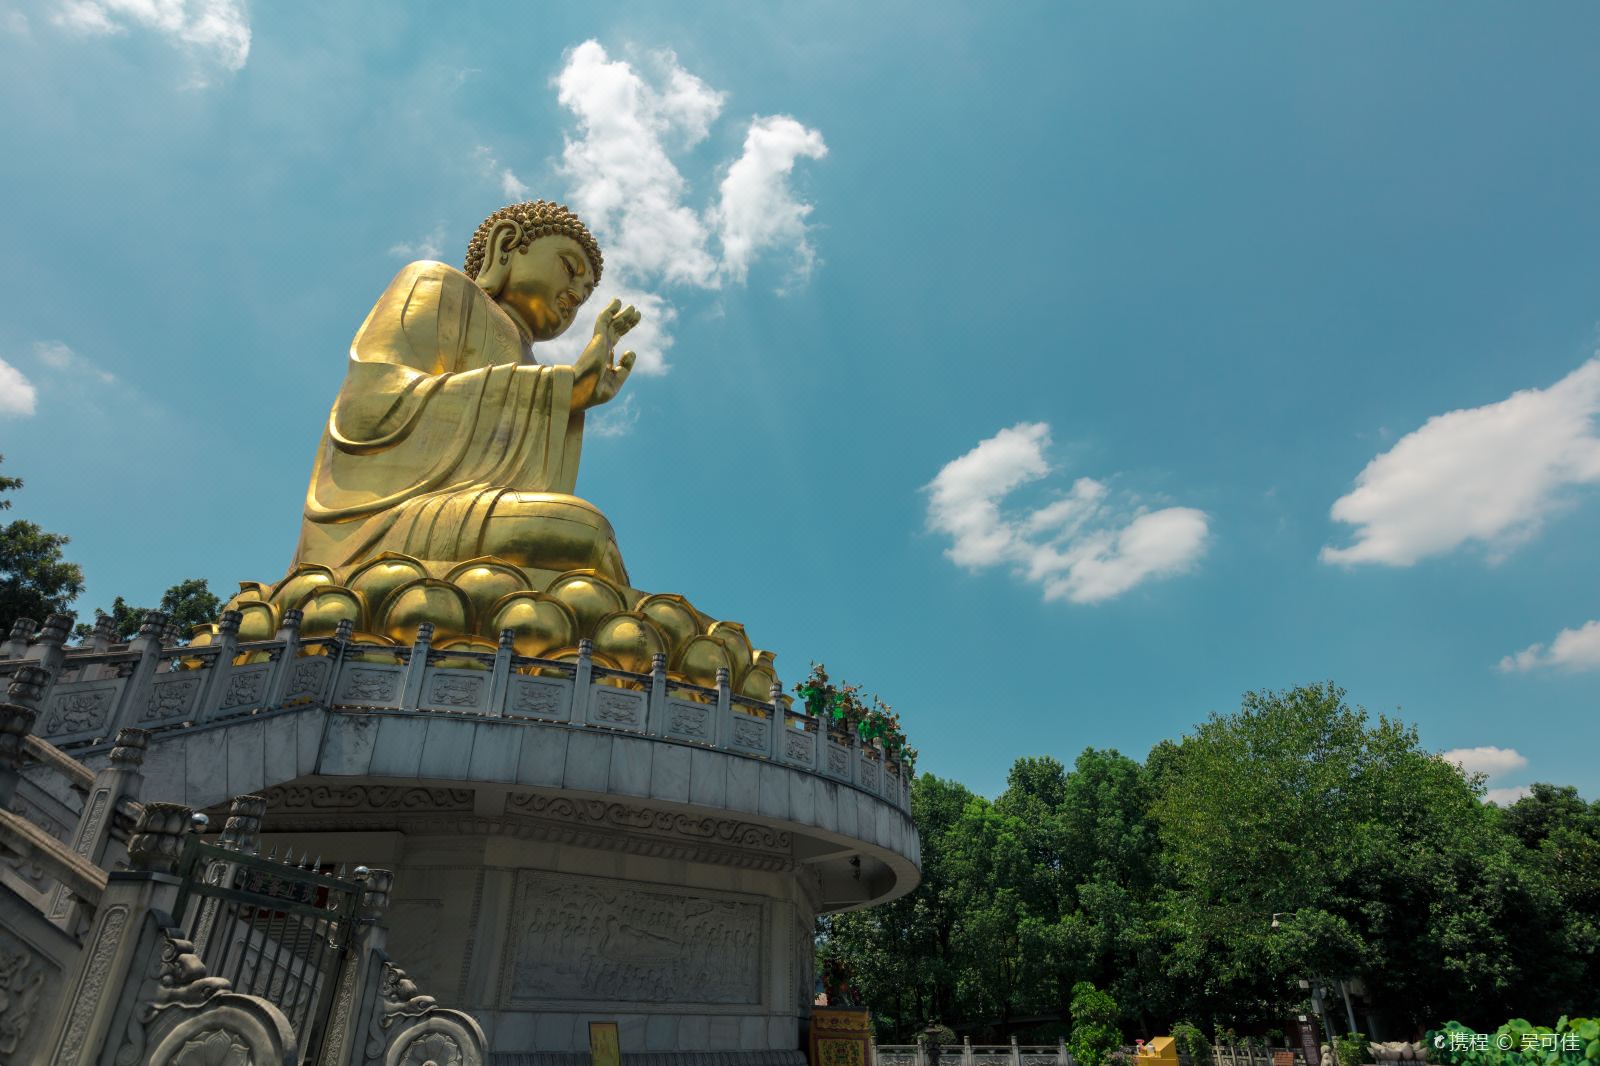 华岩寺金身大佛 ，于2005年建成。佛像为：释迦摩尼佛